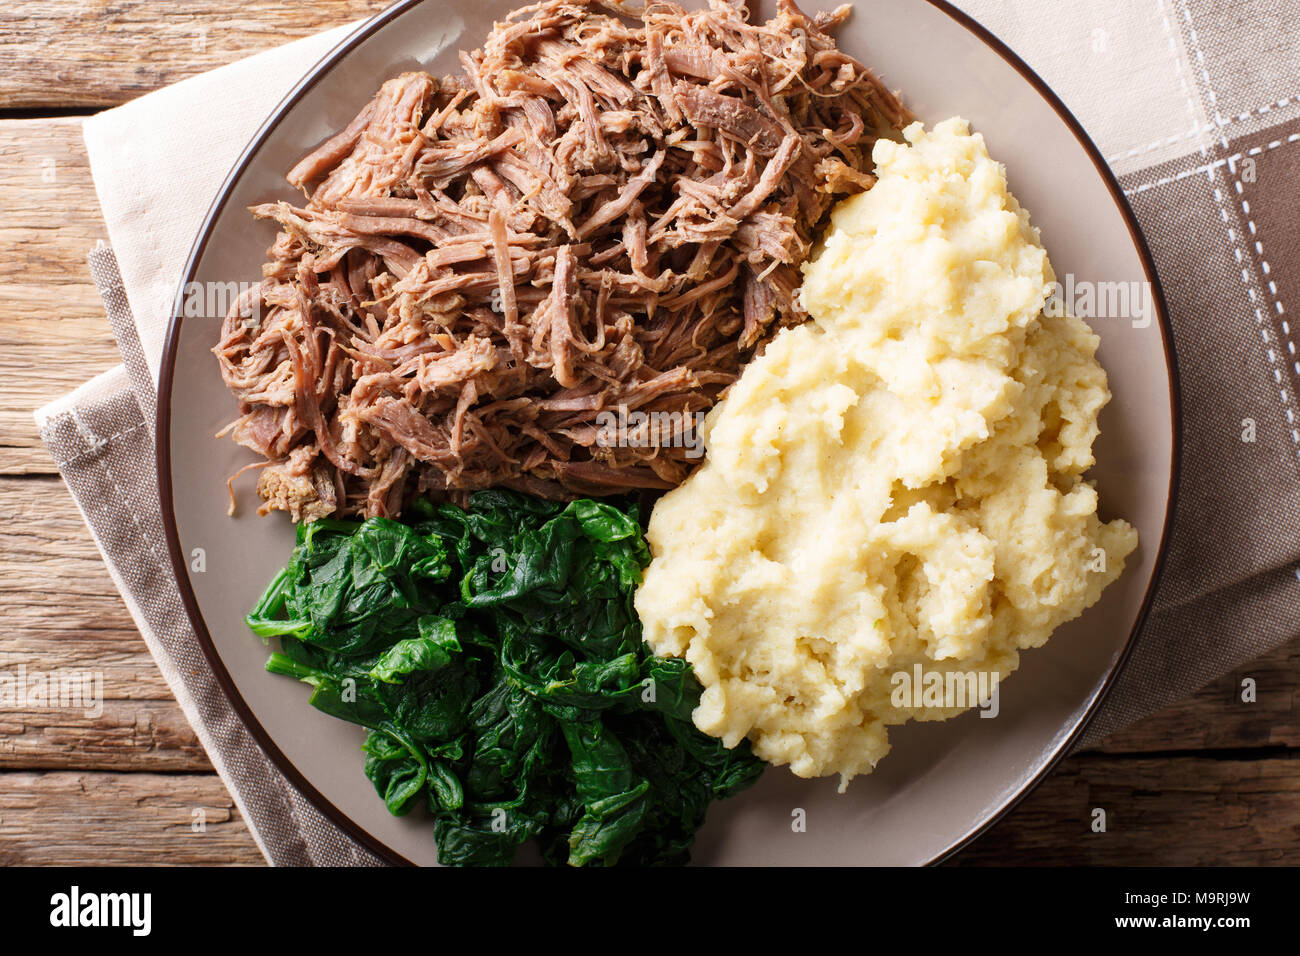 Südafrikanisches Essen: - Seswaa Shredded Beef mit sadza Porridge und Spinat close-up auf einem Teller auf den Tisch. horizontal oben Ansicht von oben Stockfoto